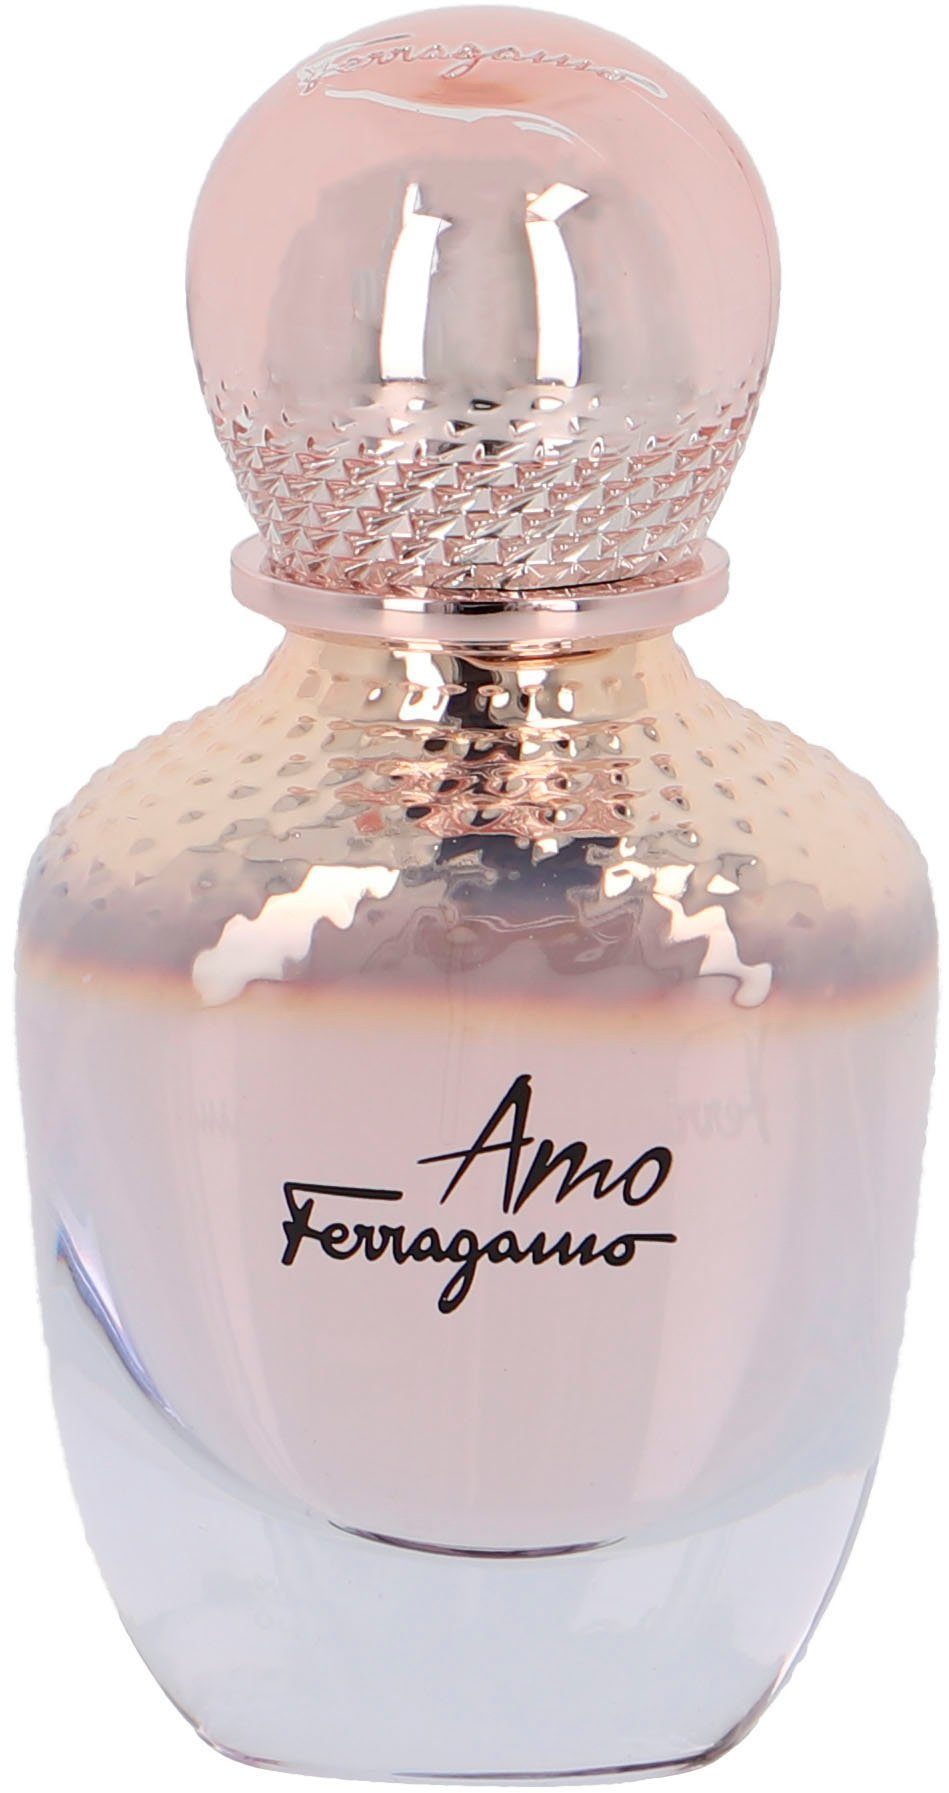 Eau Ammo Ferragamo, de Parfum Salvatore Ferragamo orientalisch